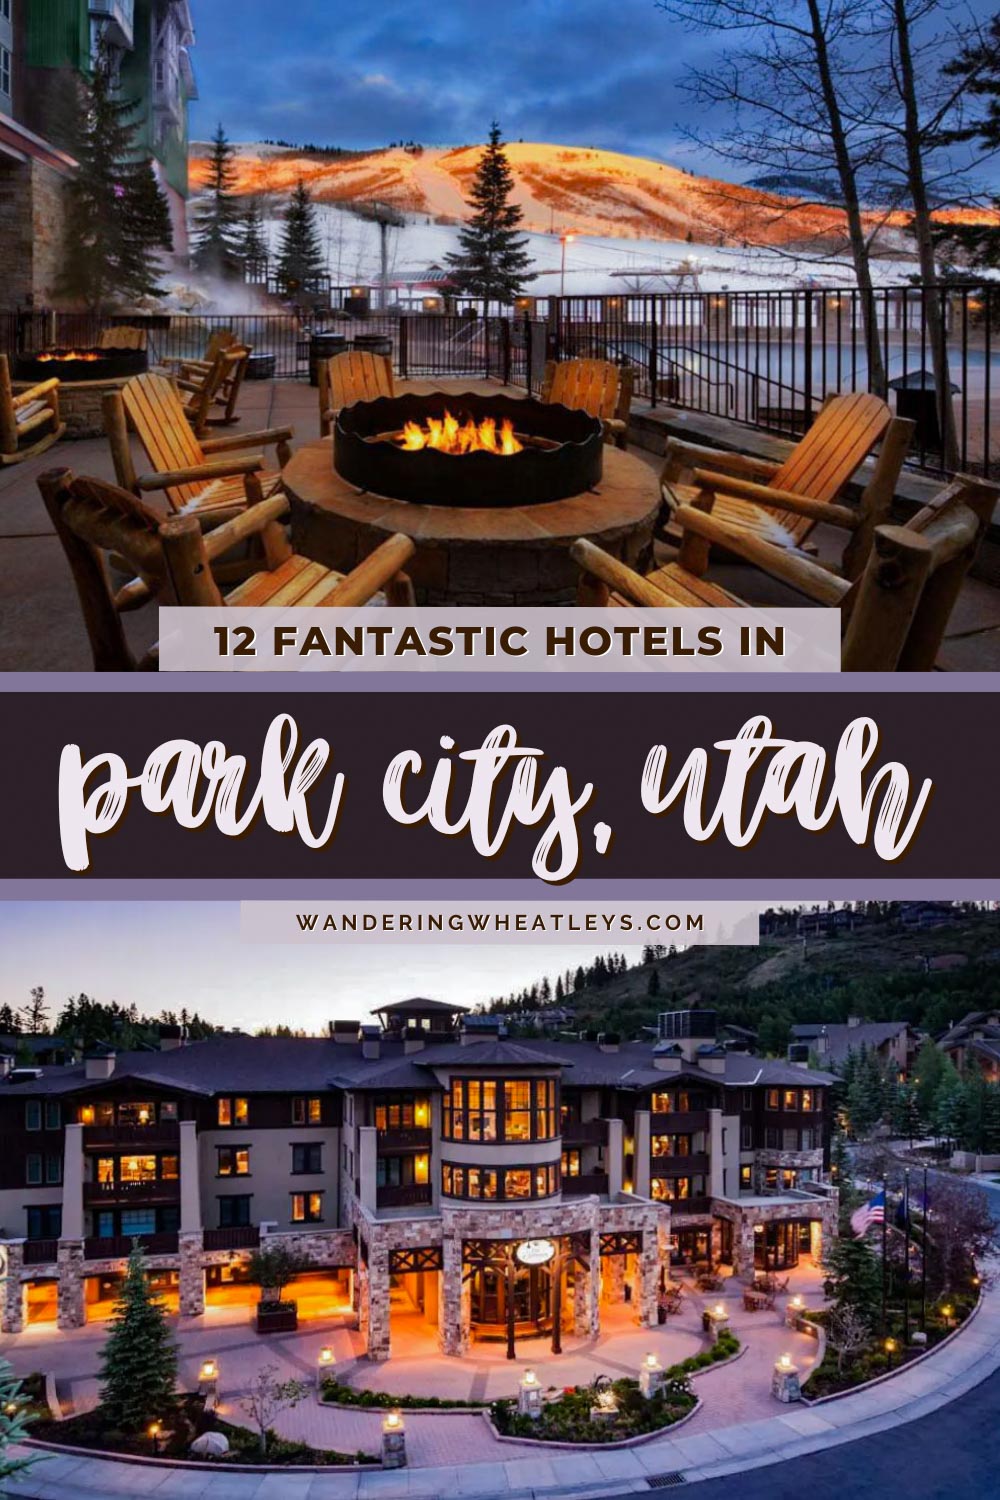 Best Hotels in Park City, Utah